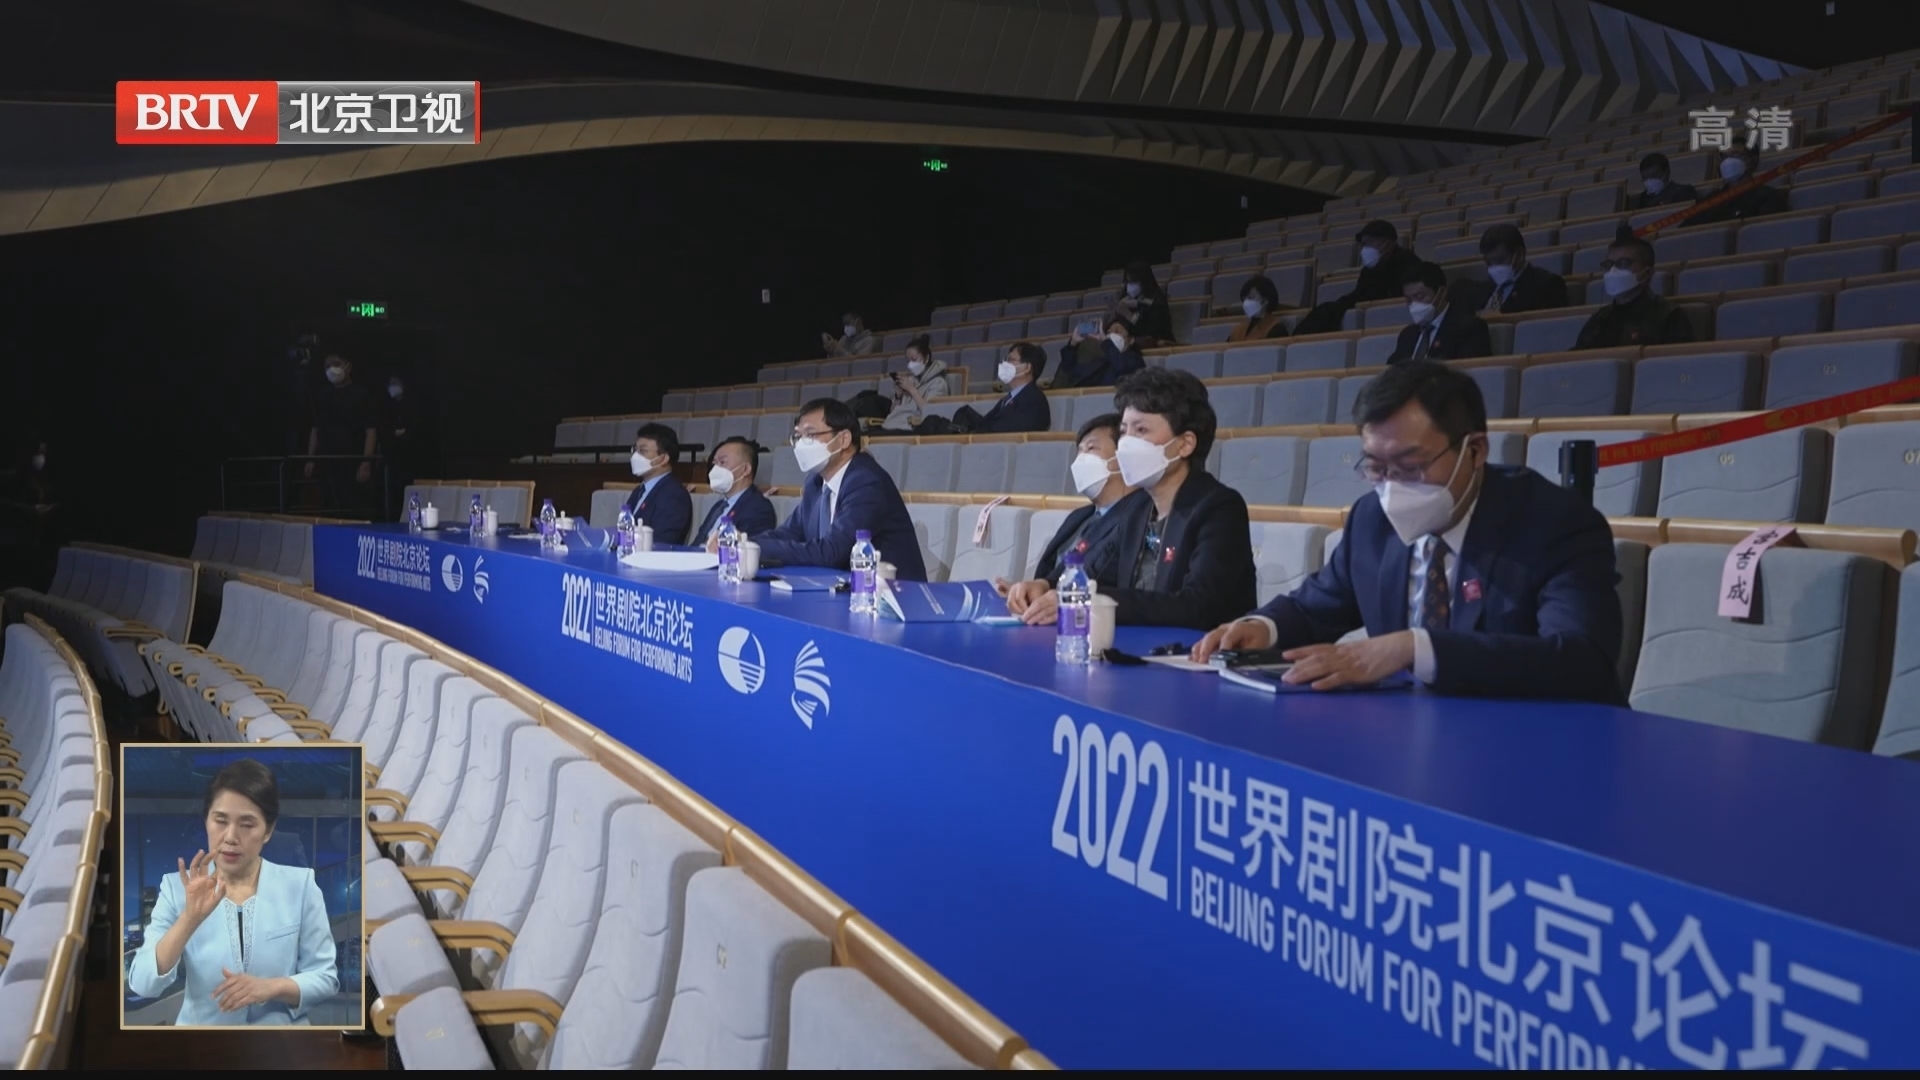 2022世界剧院北京论坛开幕